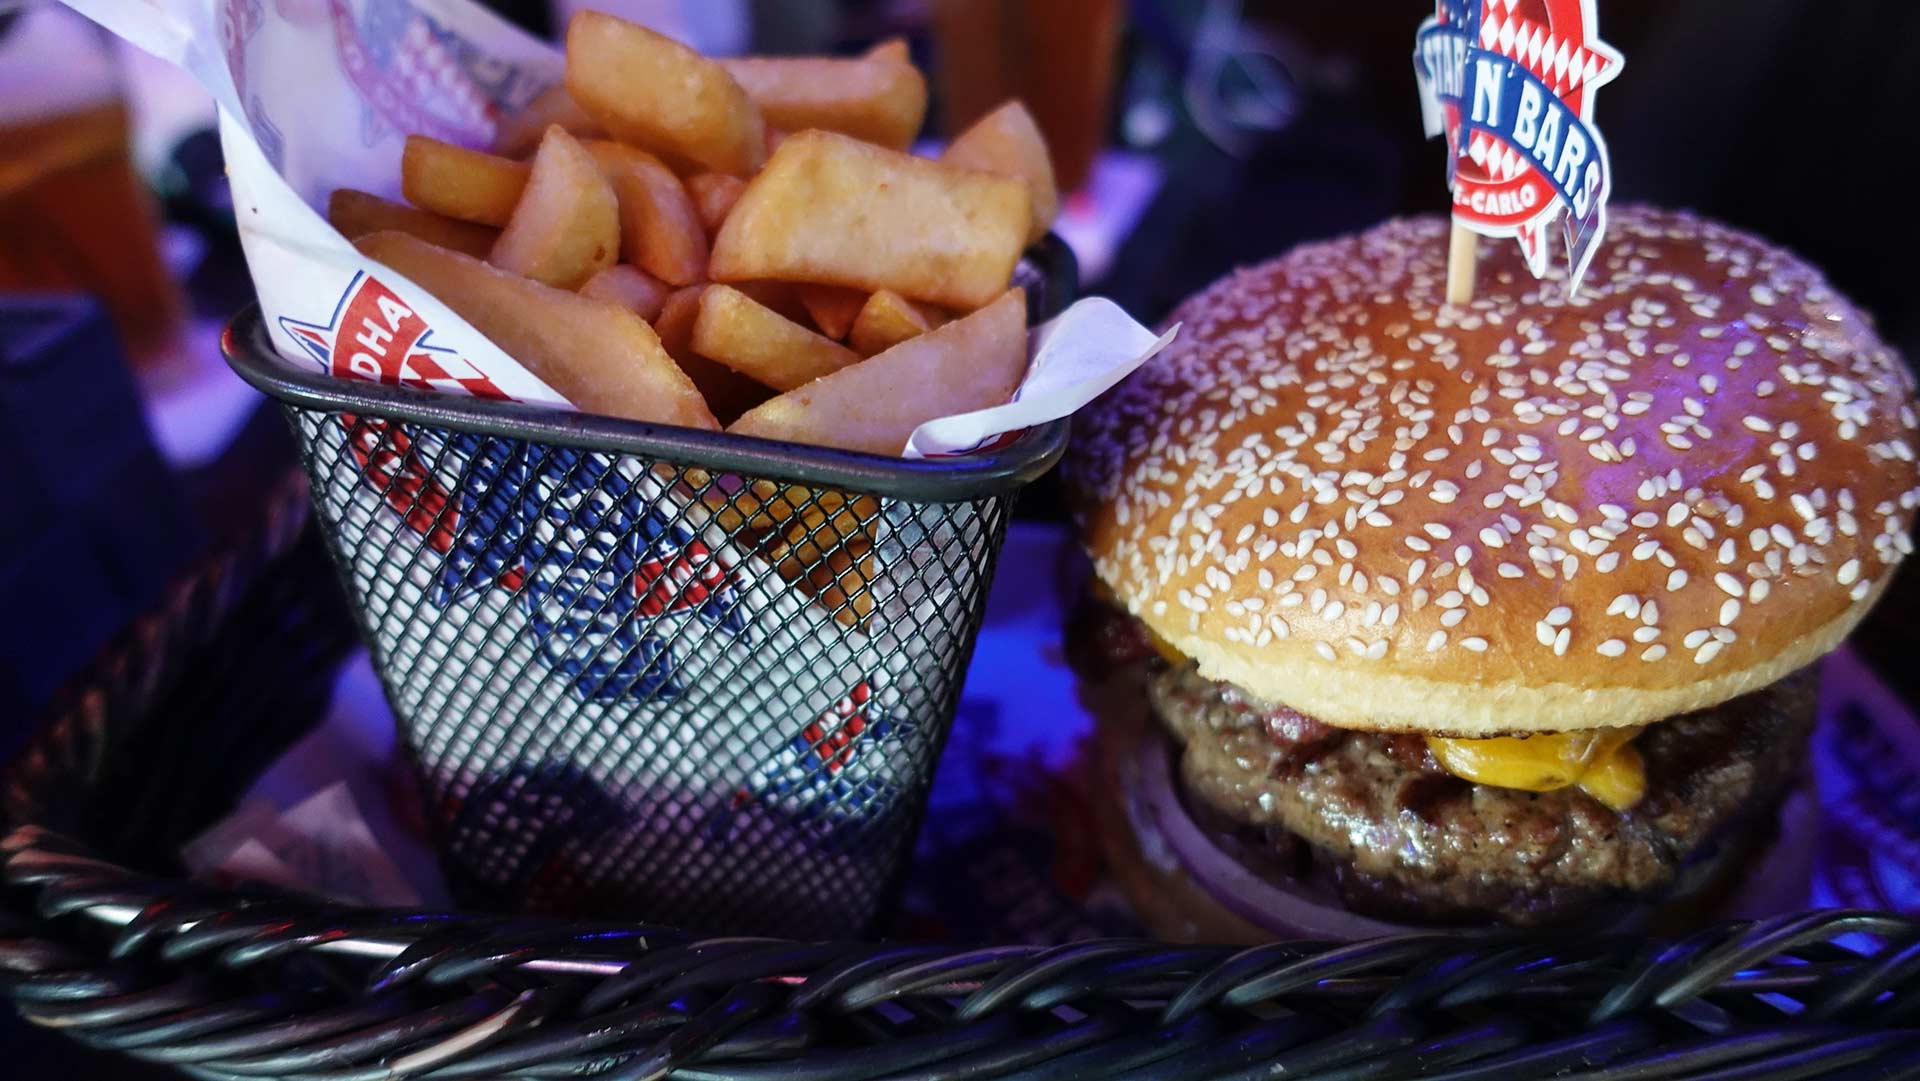 Stars N Bars - Abu Dhabi, UAE - Bacon Cheese Burger & Steak Fries